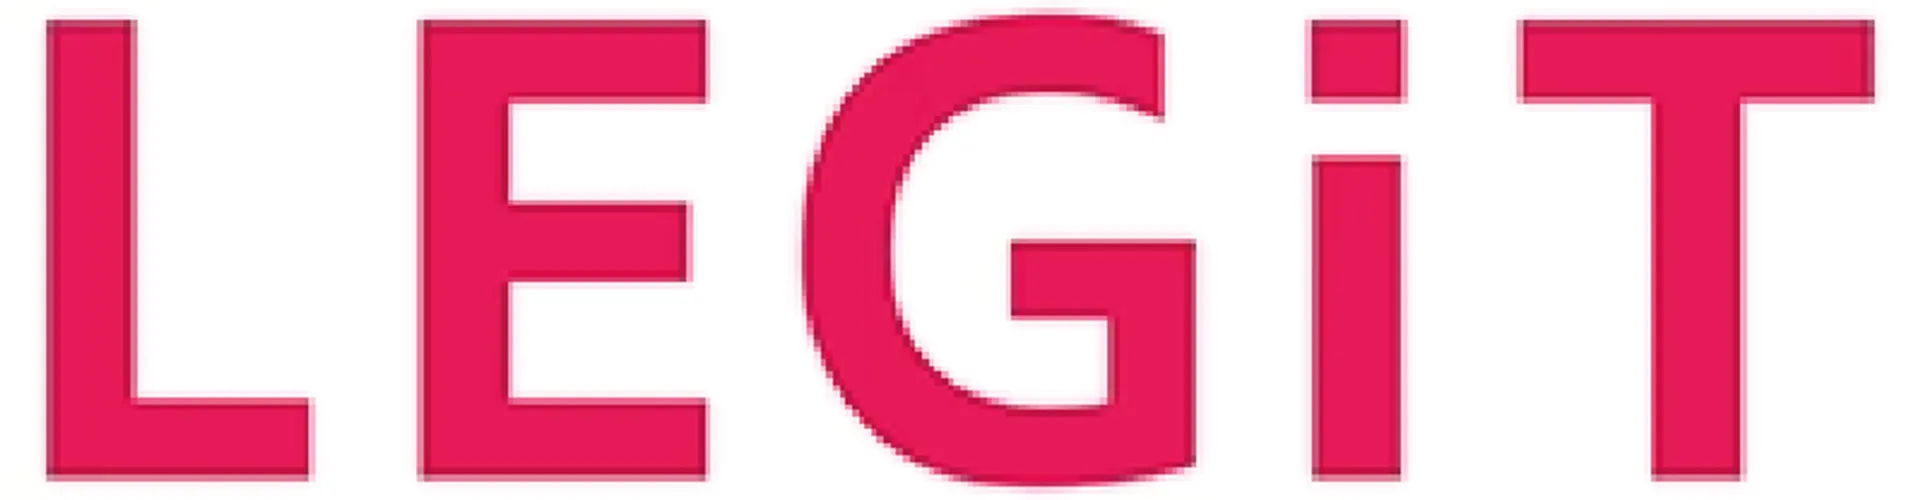 LEGIT logo